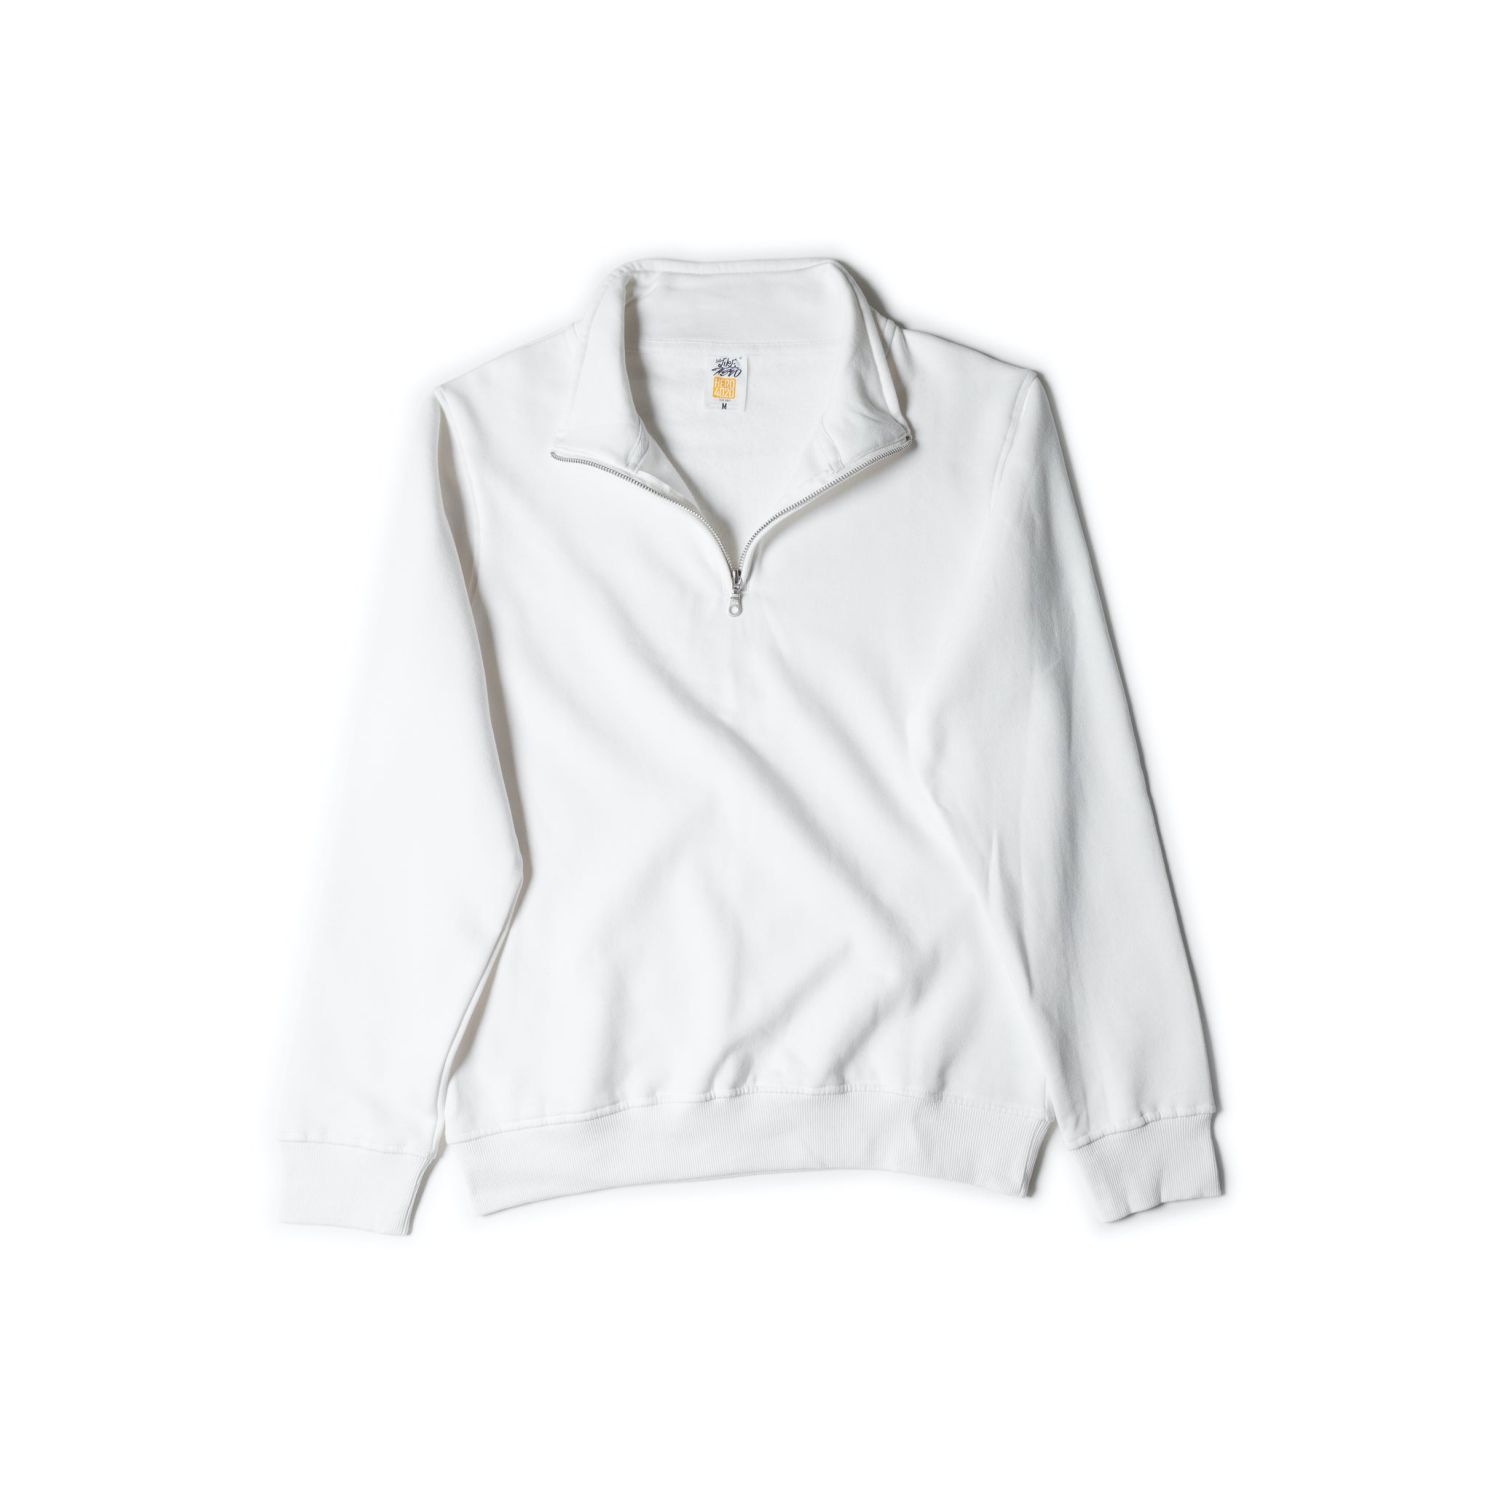 Just Like Hero Quarter-Zip Sweatshirt #4020 White